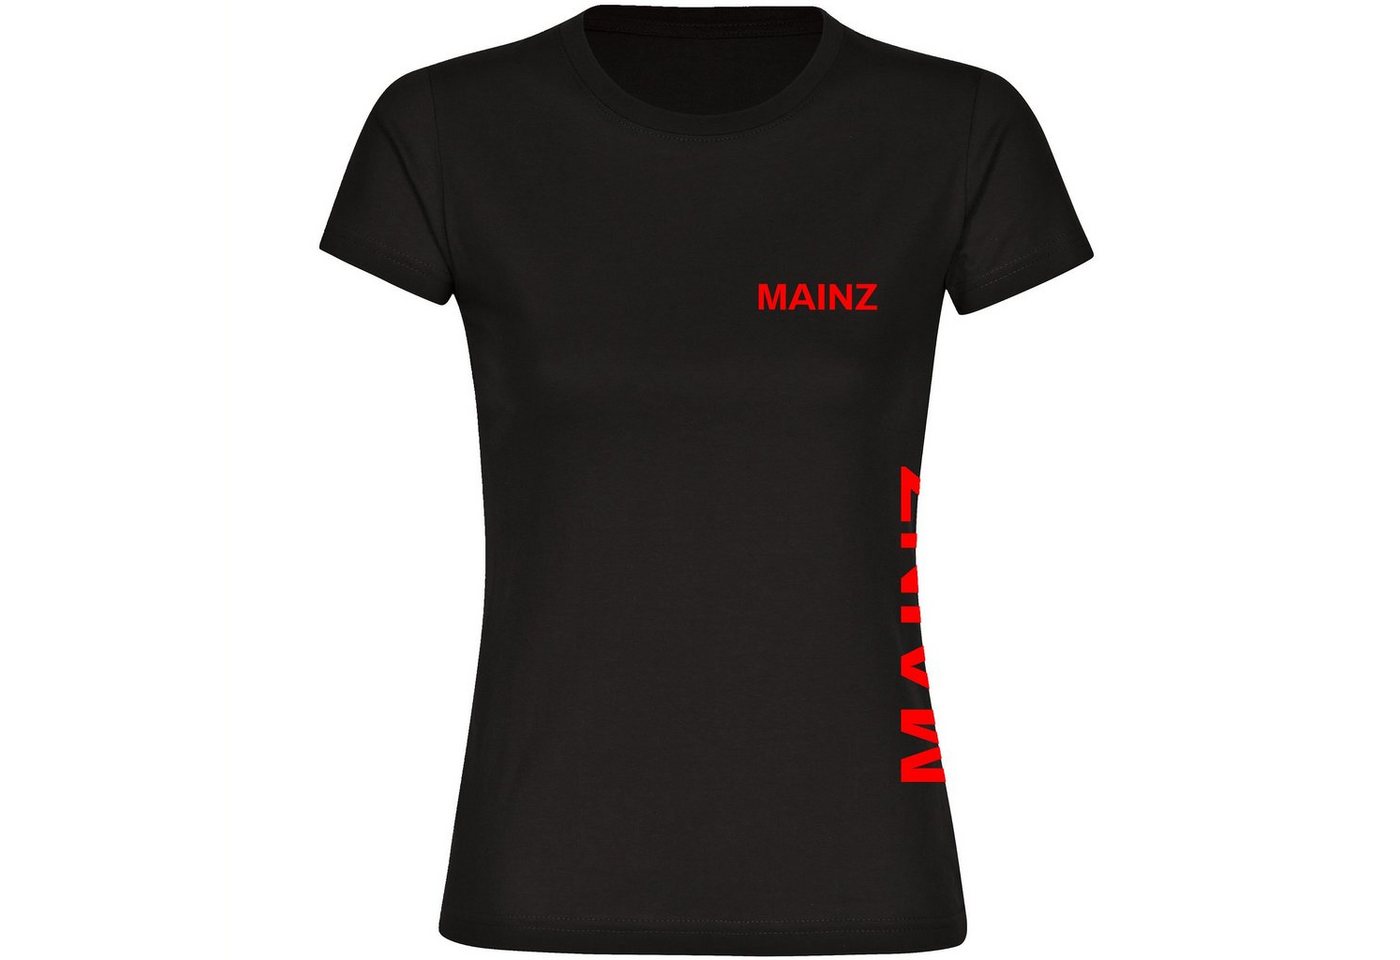 multifanshop T-Shirt Damen Mainz - Brust & Seite - Frauen von multifanshop